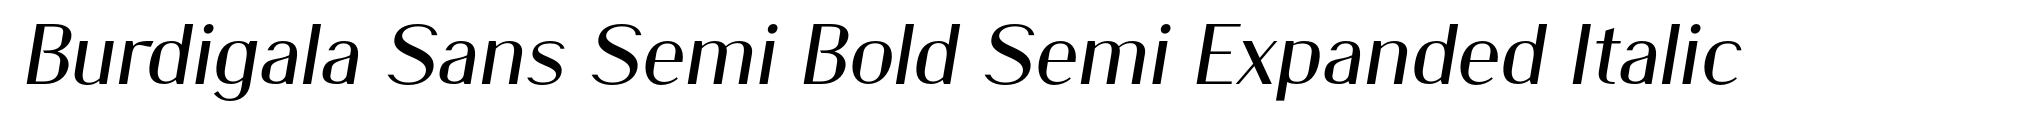 Burdigala Sans Semi Bold Semi Expanded Italic image